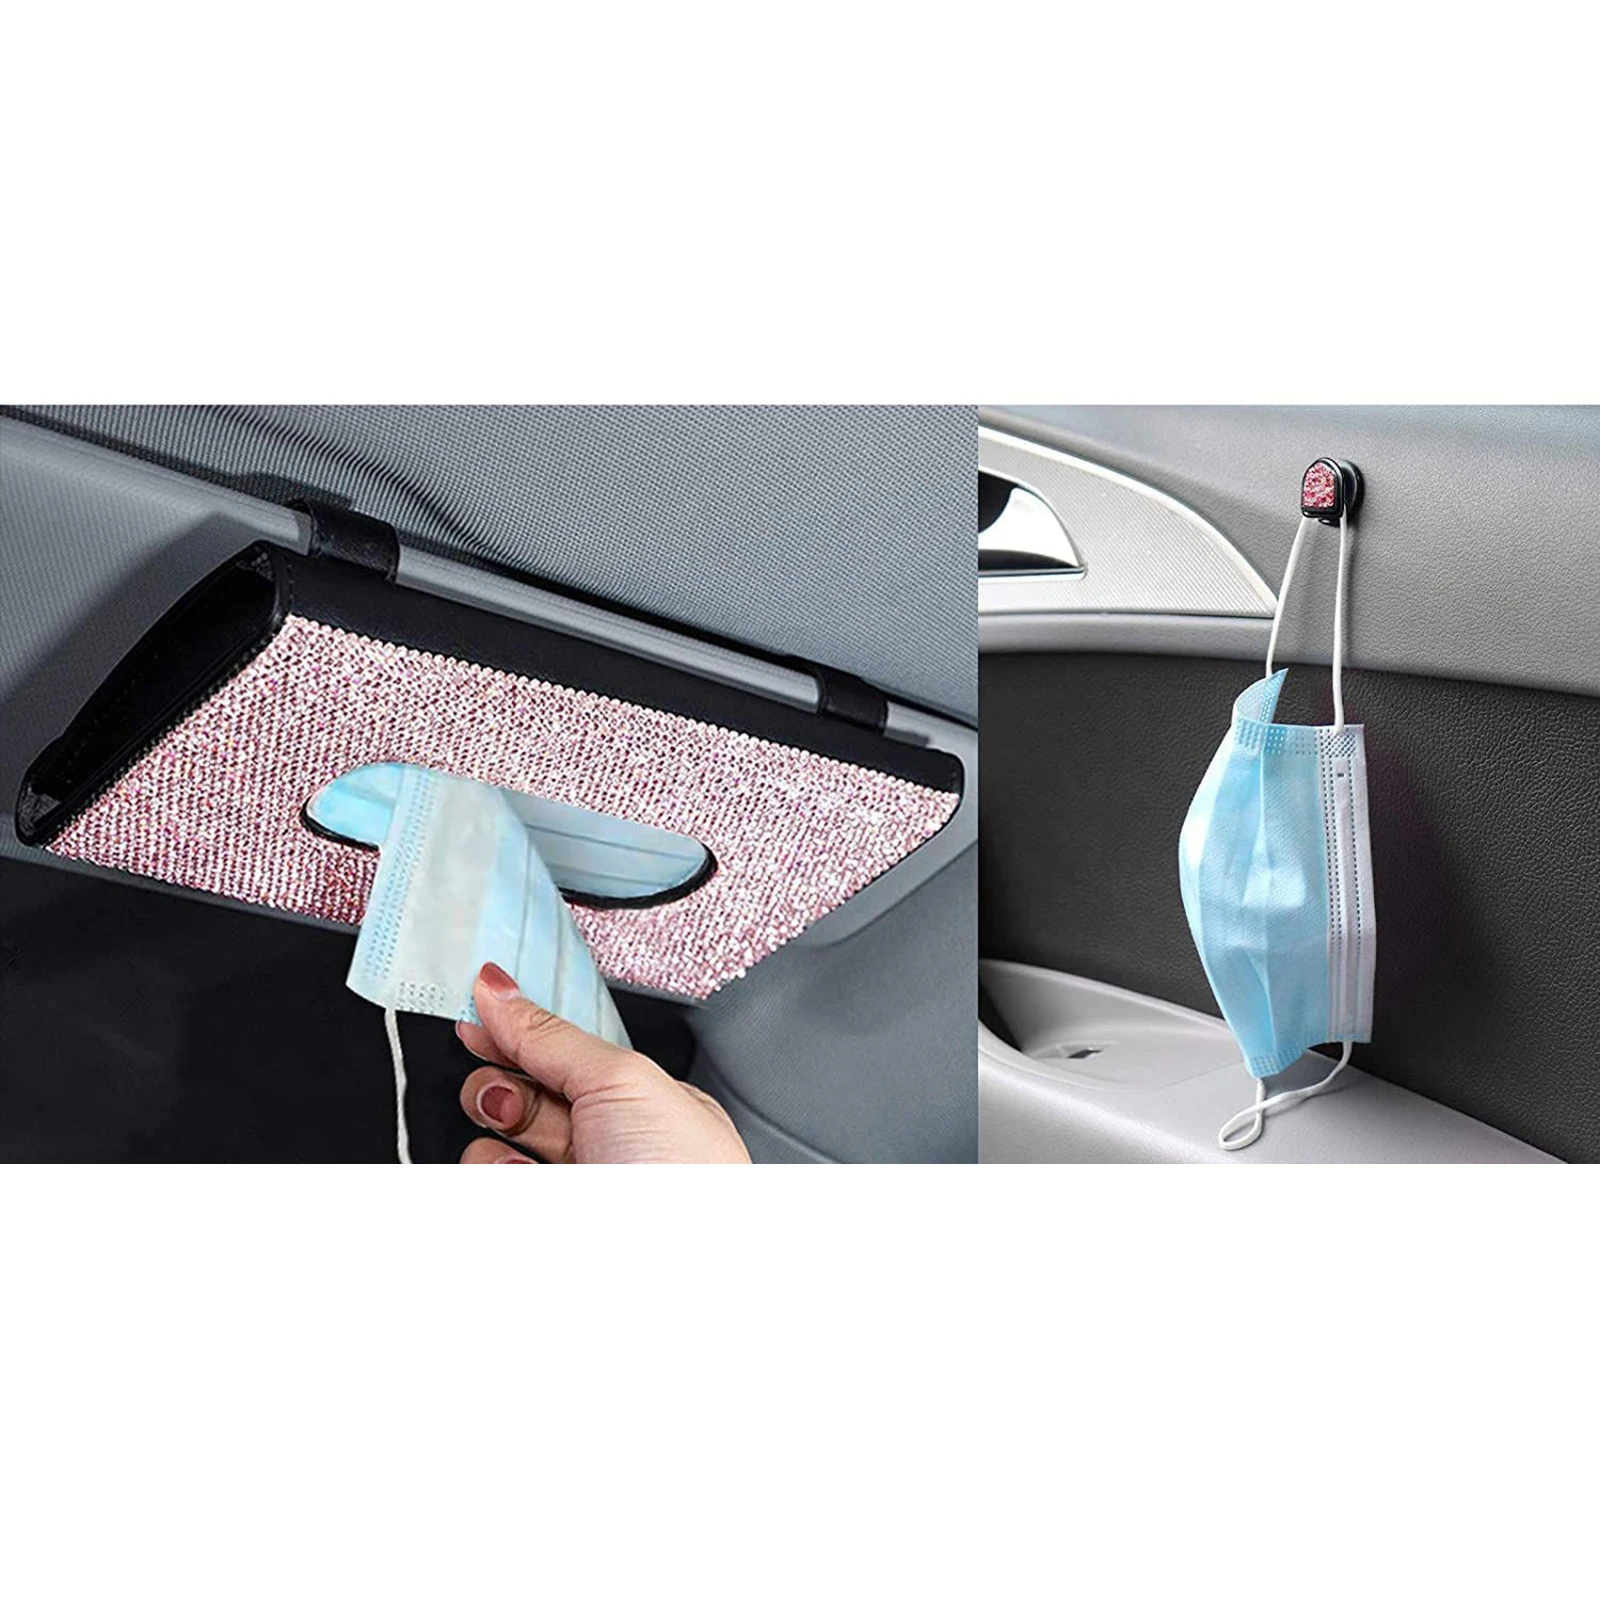 Car Tissue Holder, Sun Visor Napkin Holder, Vehicle Cars Visor Tissue Holder, PU Leather Backseat Tissue Case Holder